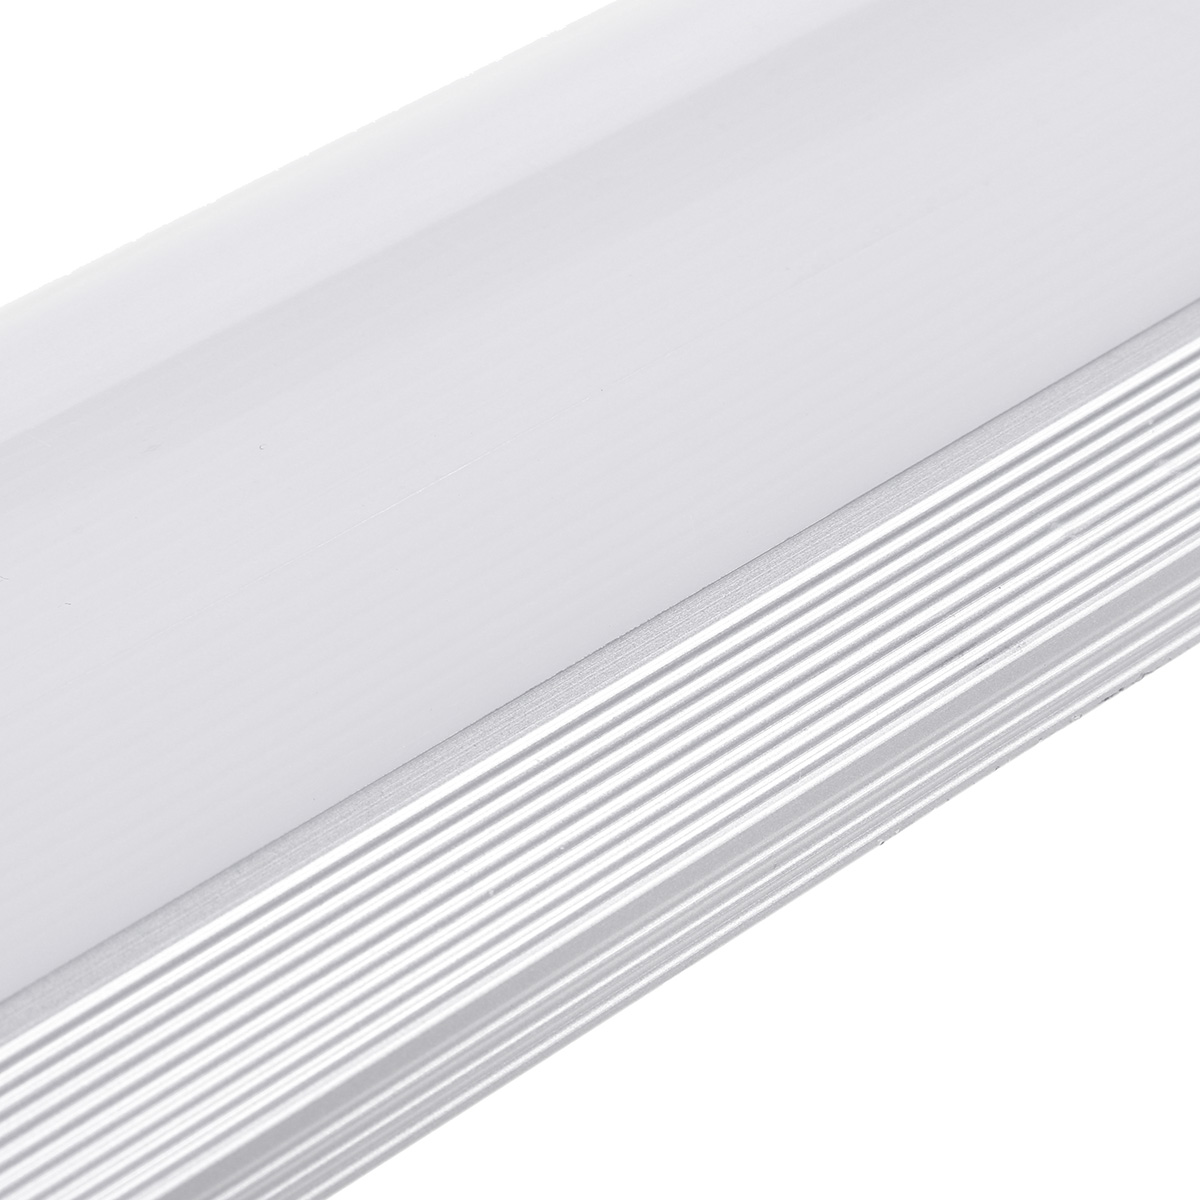 6Pcs-2FT-LED-Batten-Tube-Light-For-Garage-Workshop-Ceiling-Panel-Wall-Lamp-1730495-6